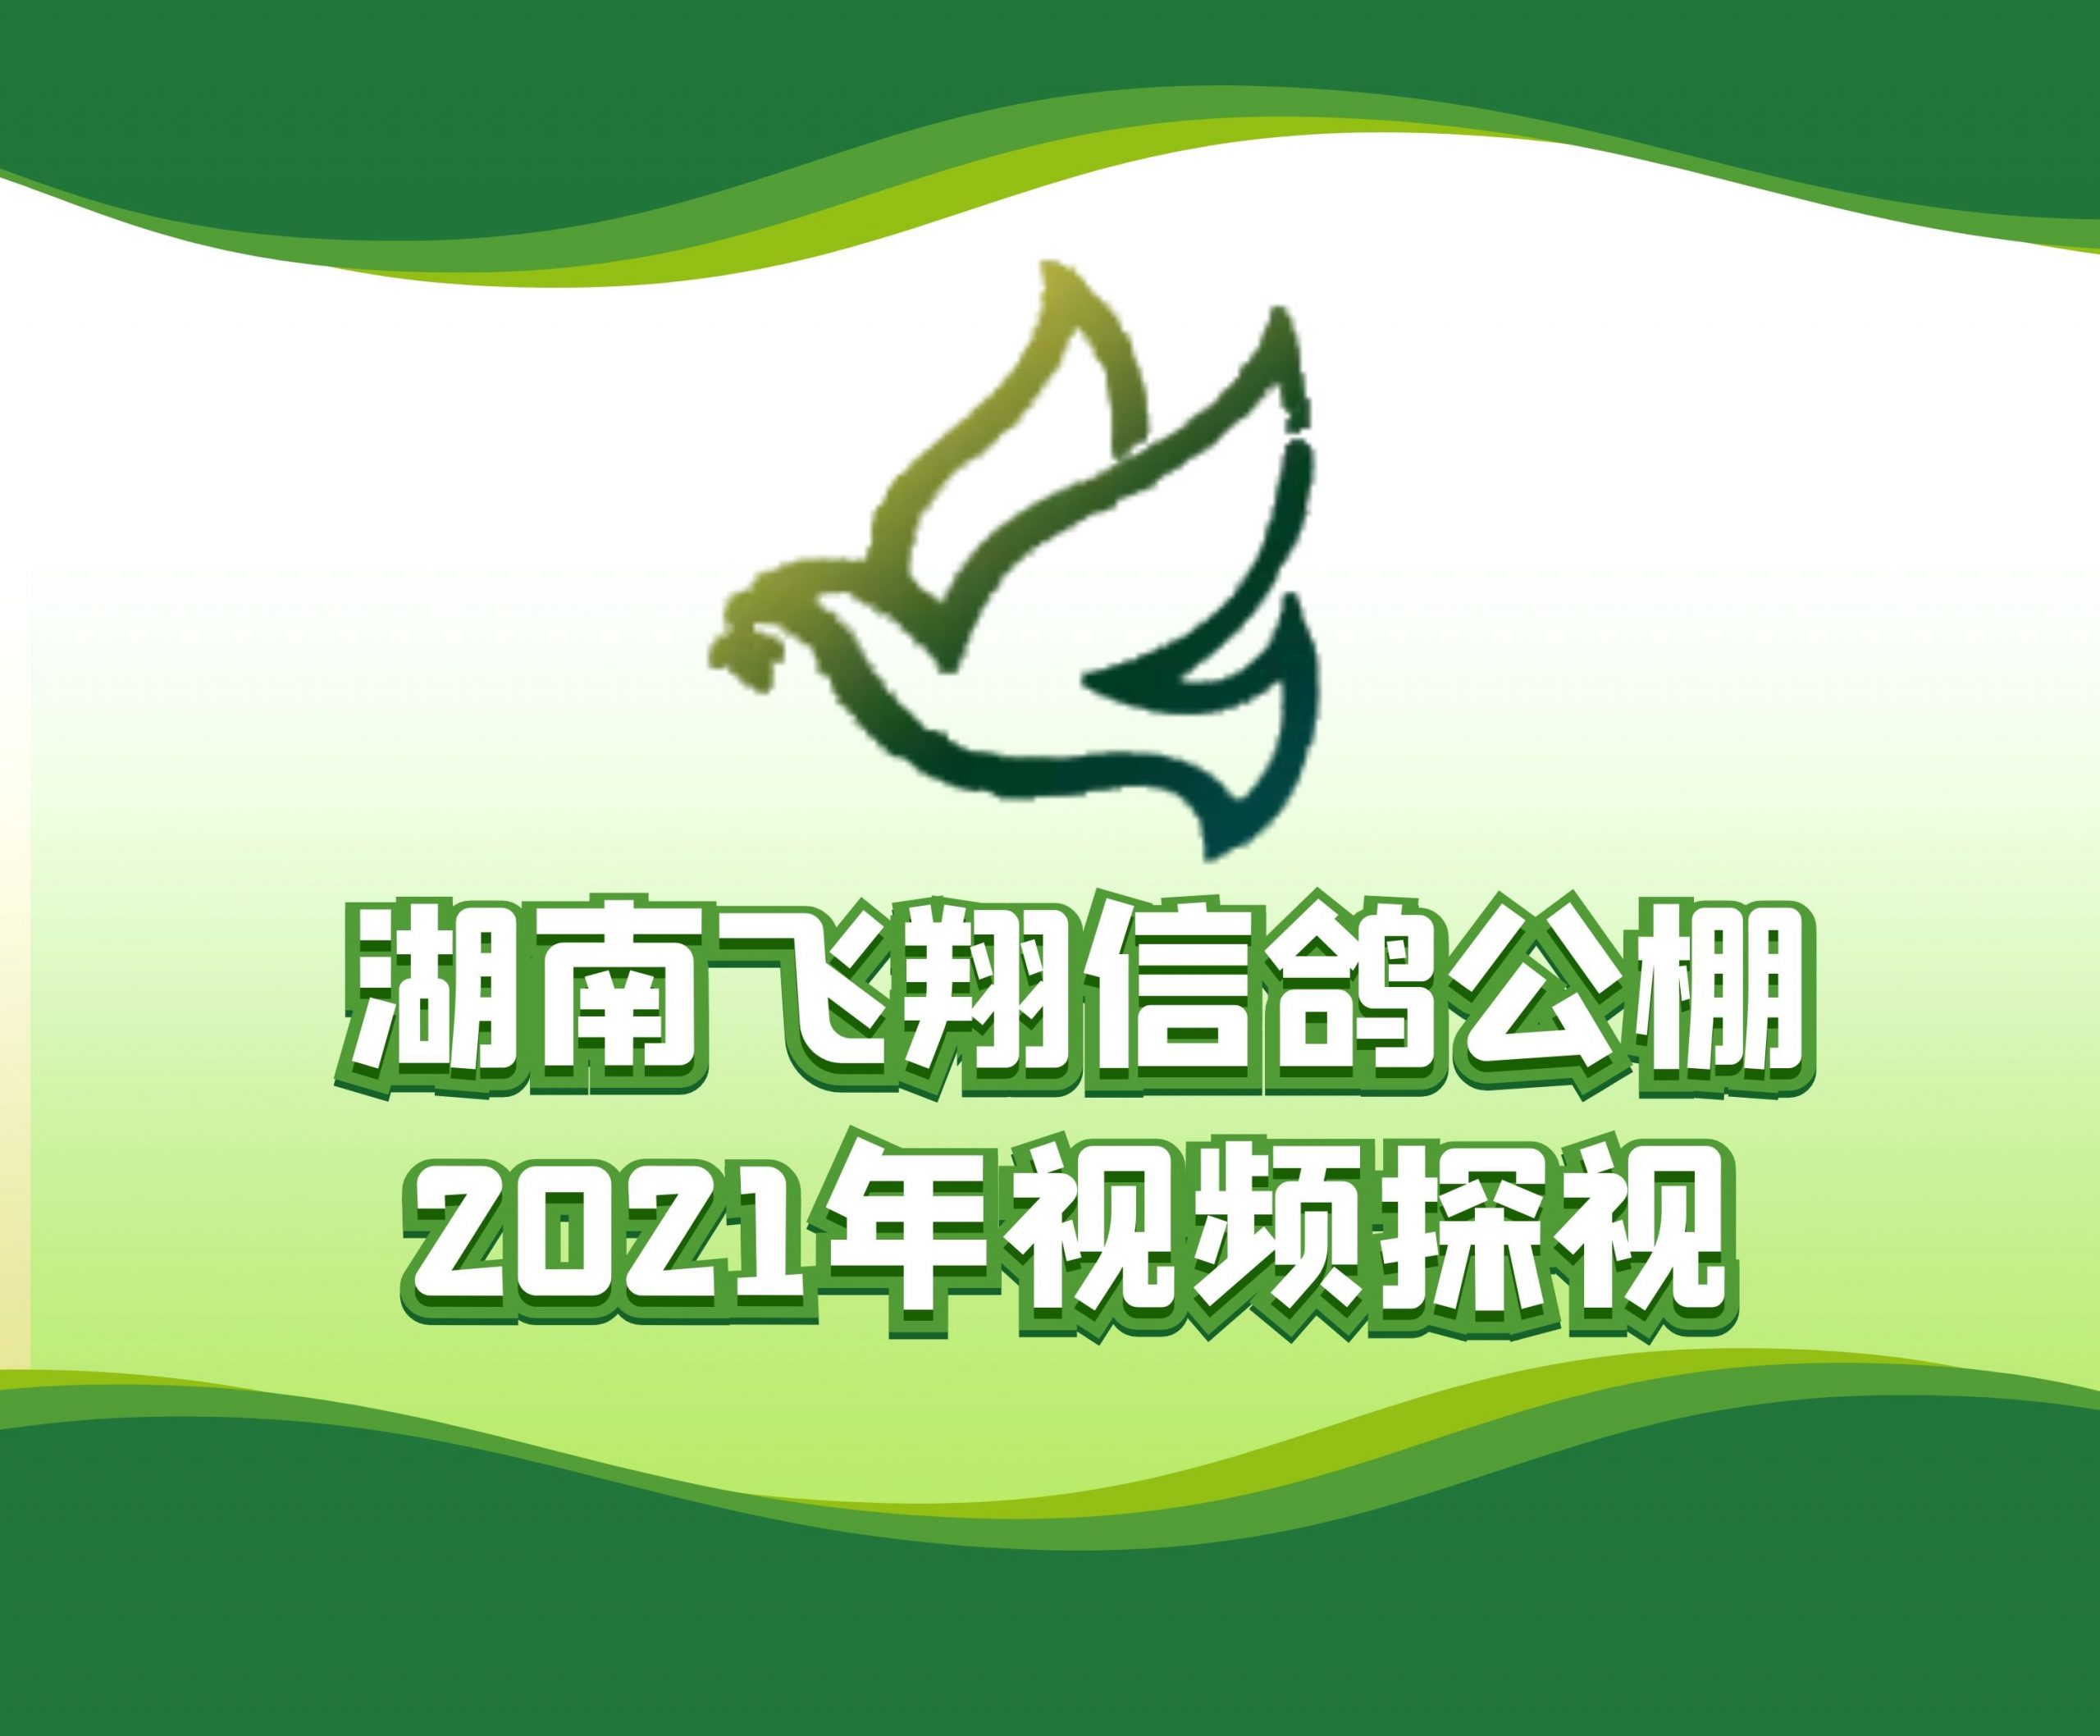 刘易-2021-32-0675933